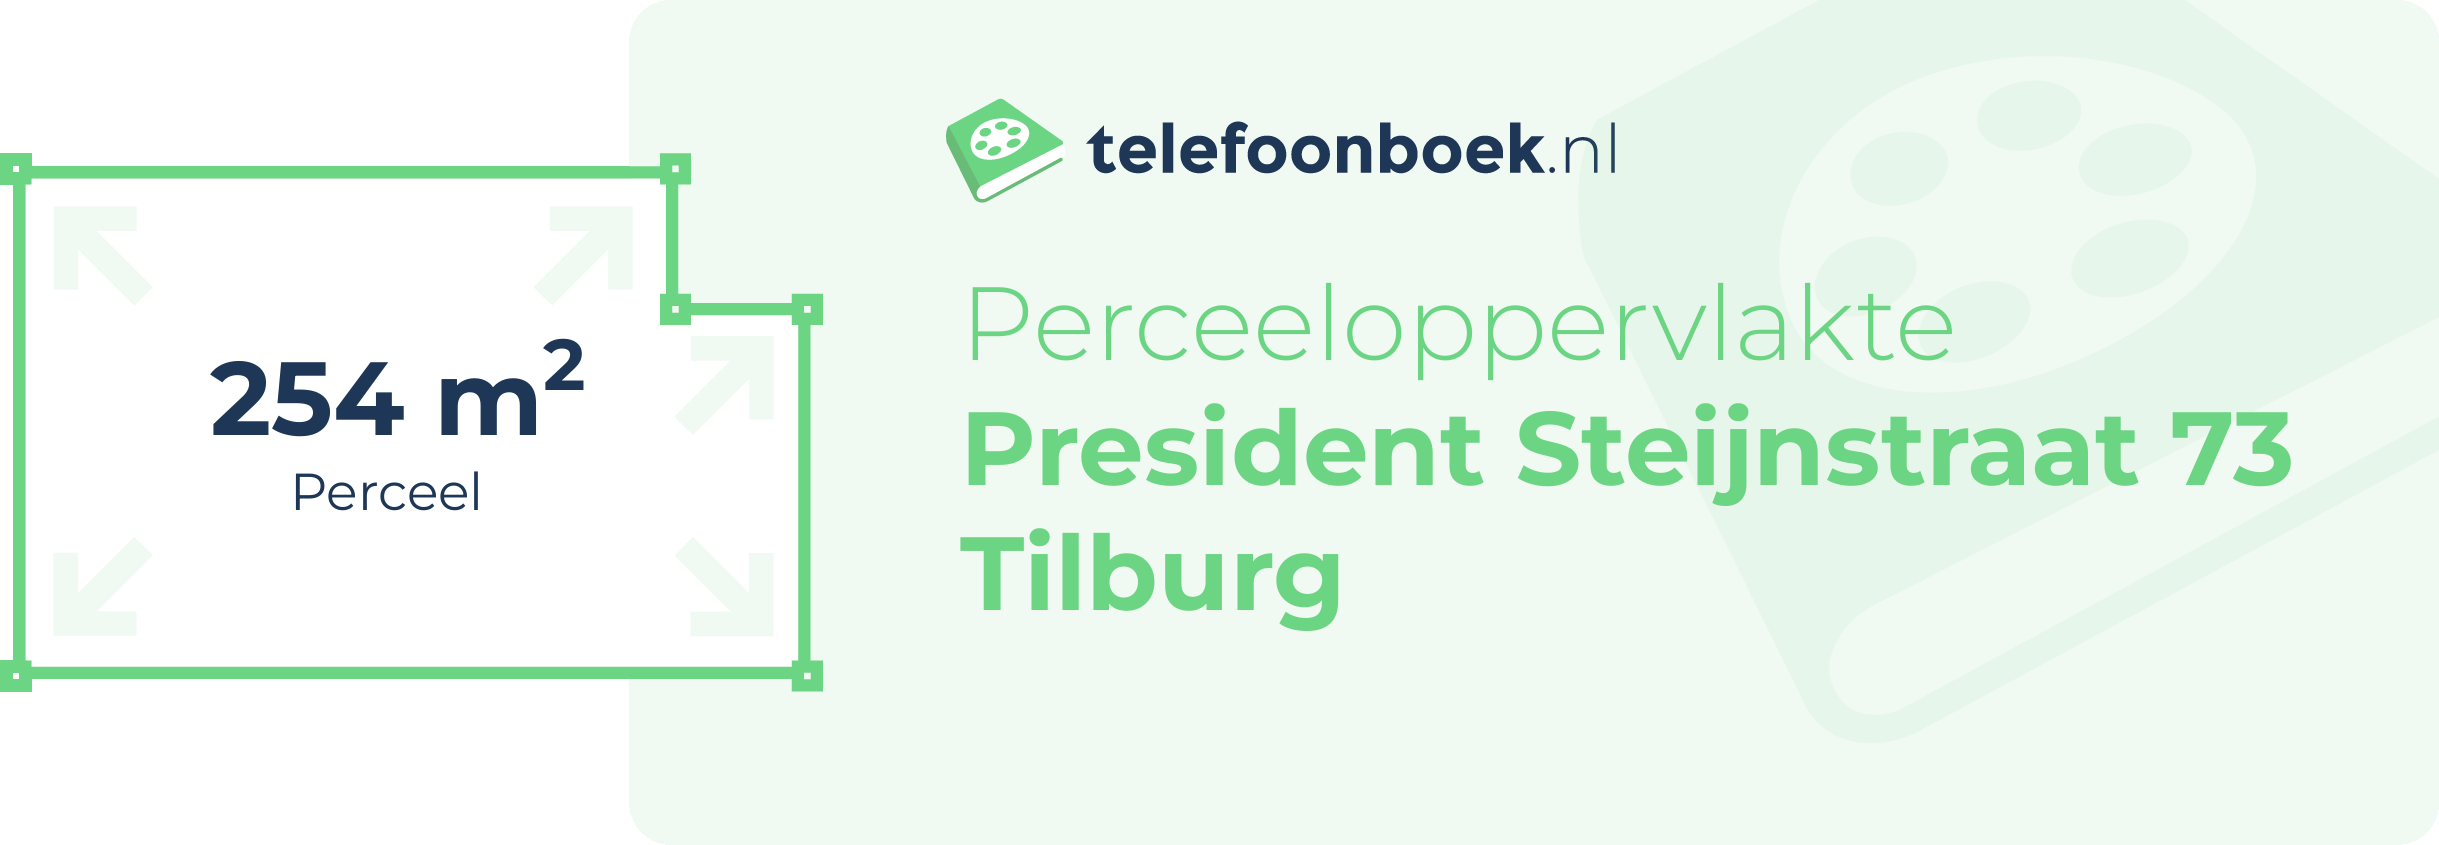 Perceeloppervlakte President Steijnstraat 73 Tilburg